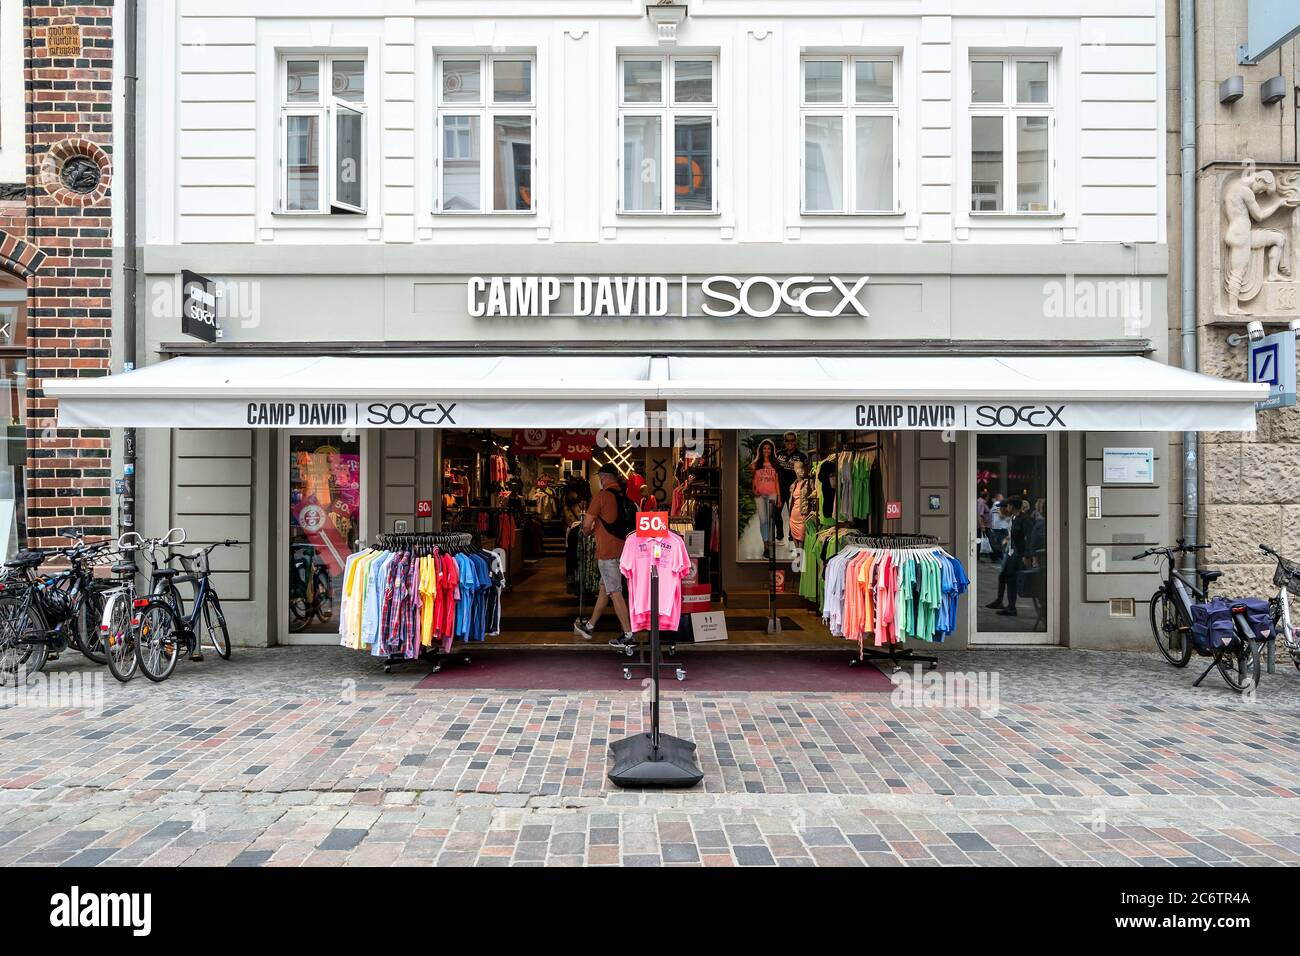 Camp David | Soccx store in Rostock, Germany Stock Photo - Alamy